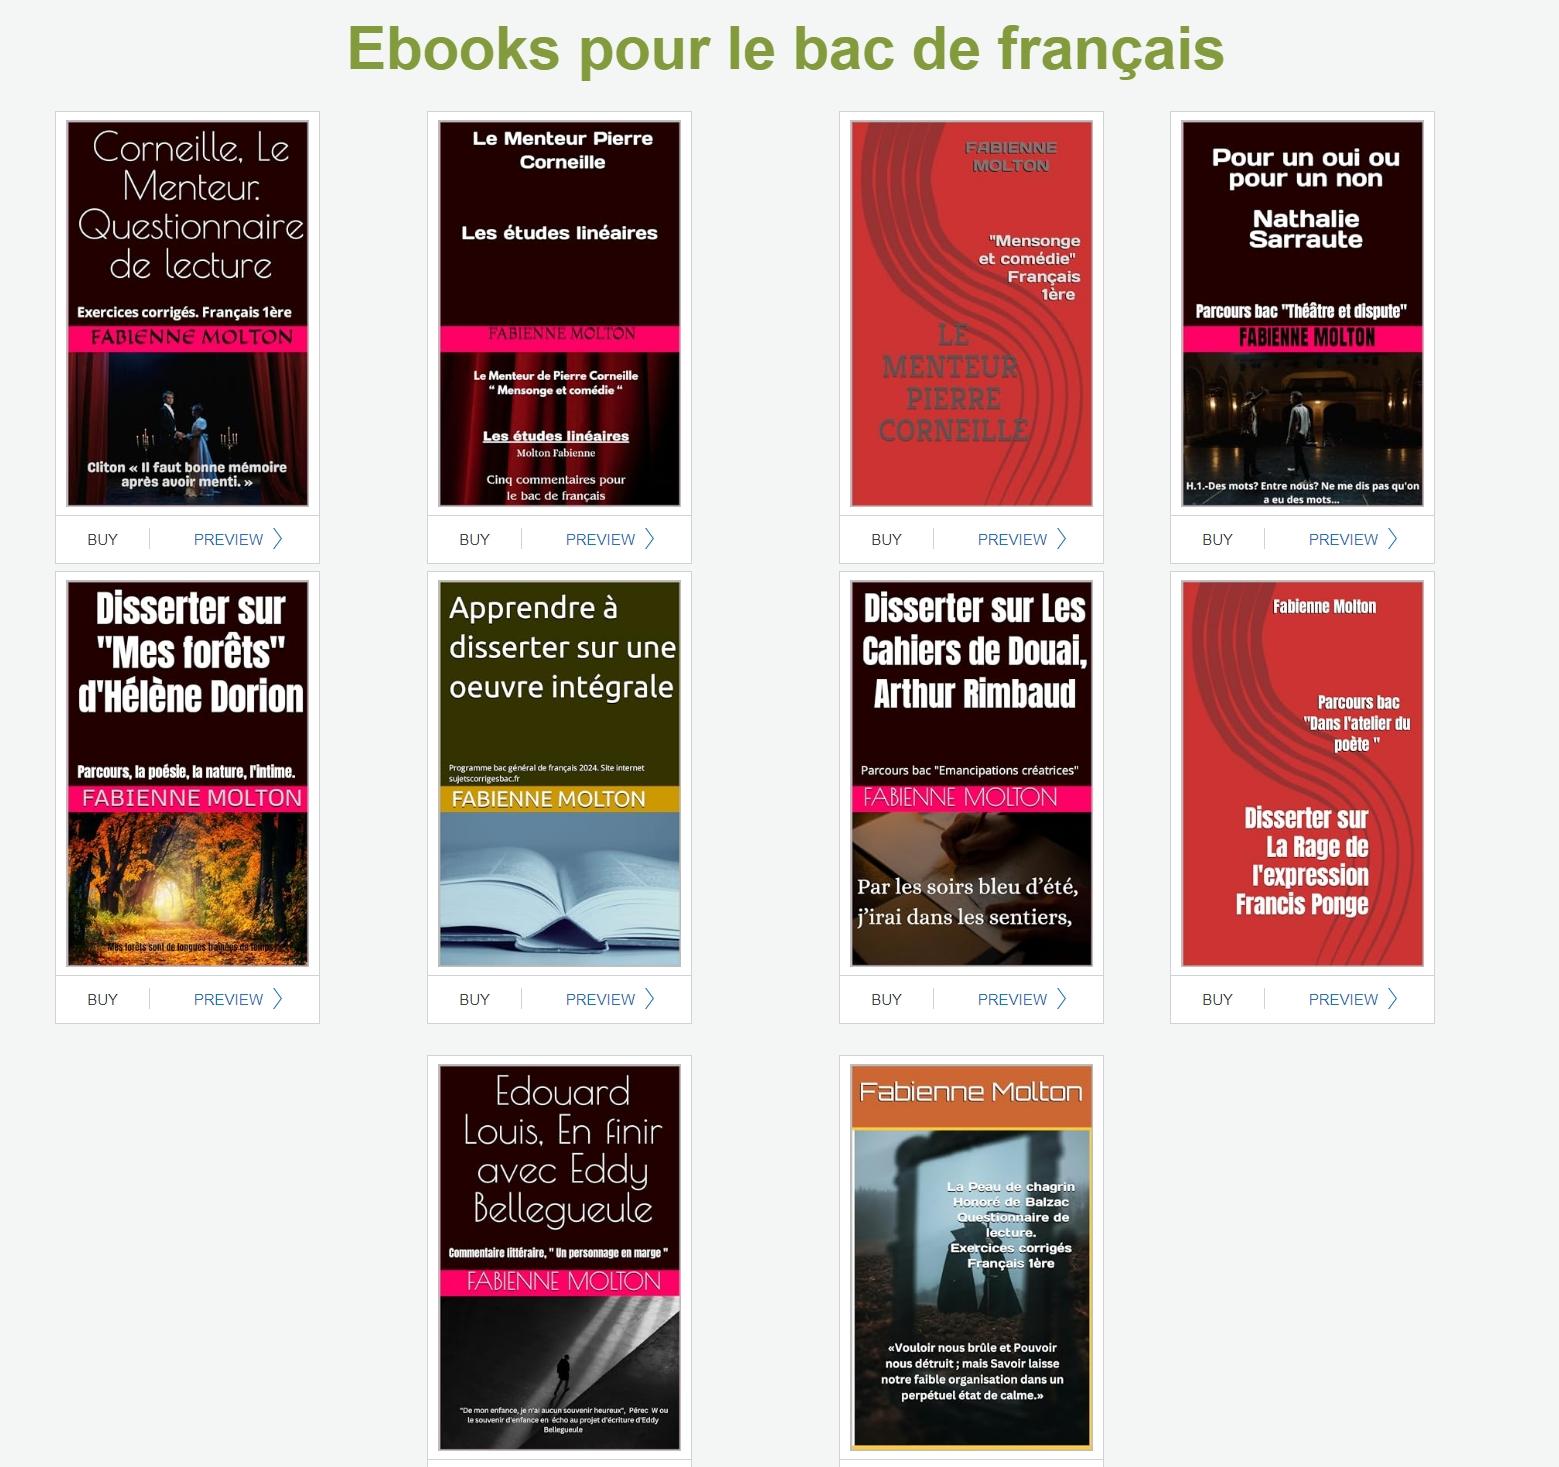 Ebooks pour le bac 2